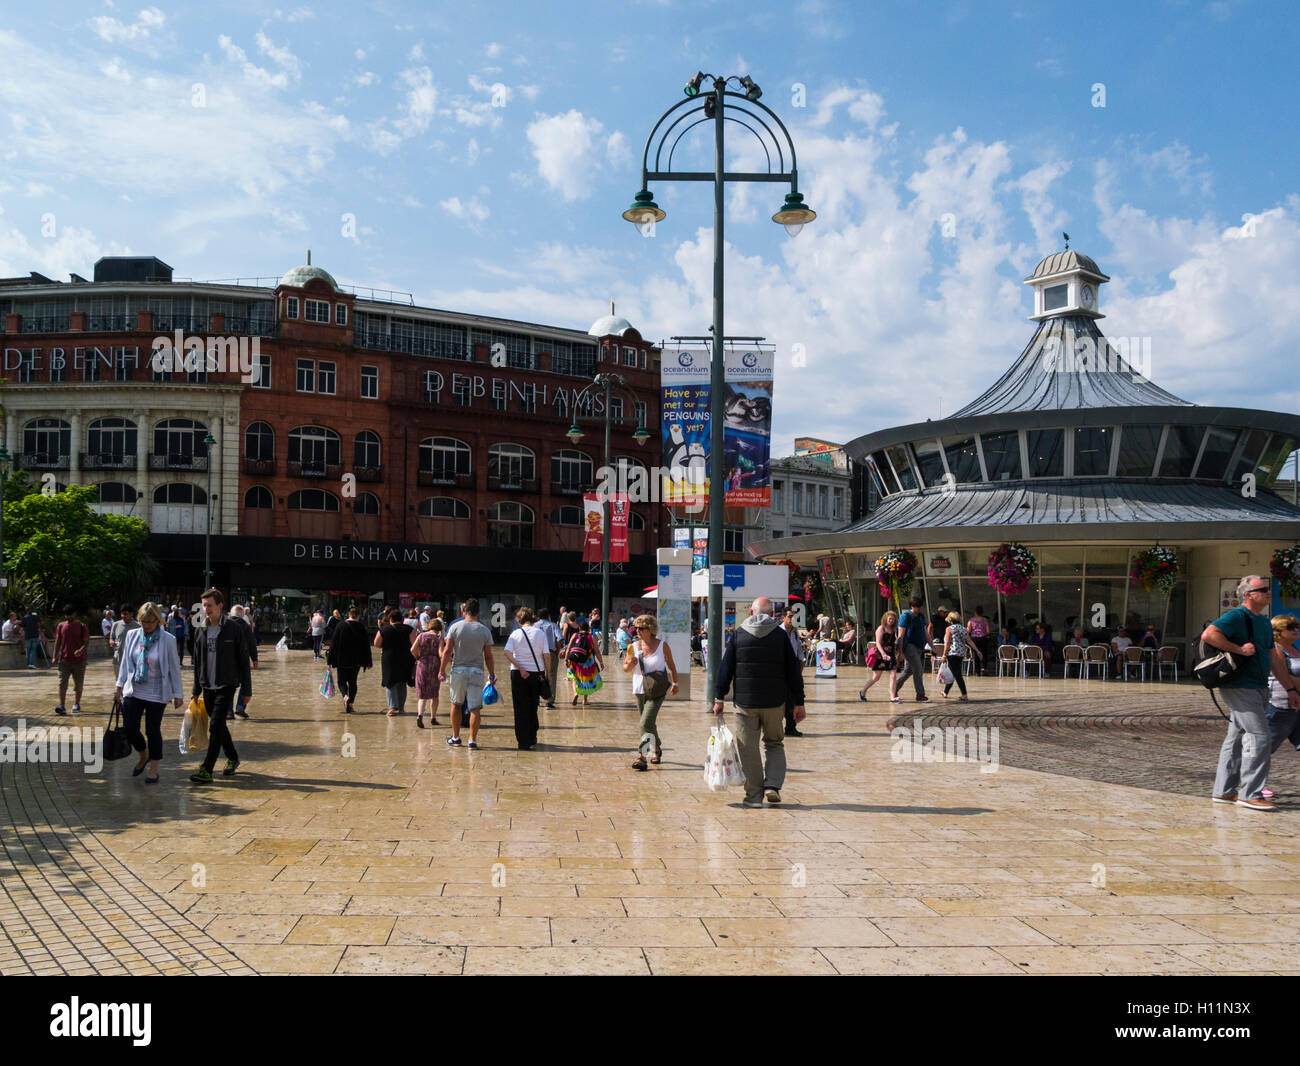 La plaza peatonal de la plaza del centro de la ciudad Bournemouth Dorset, Inglaterra con Debenhams almacenar en el fondo Foto de stock